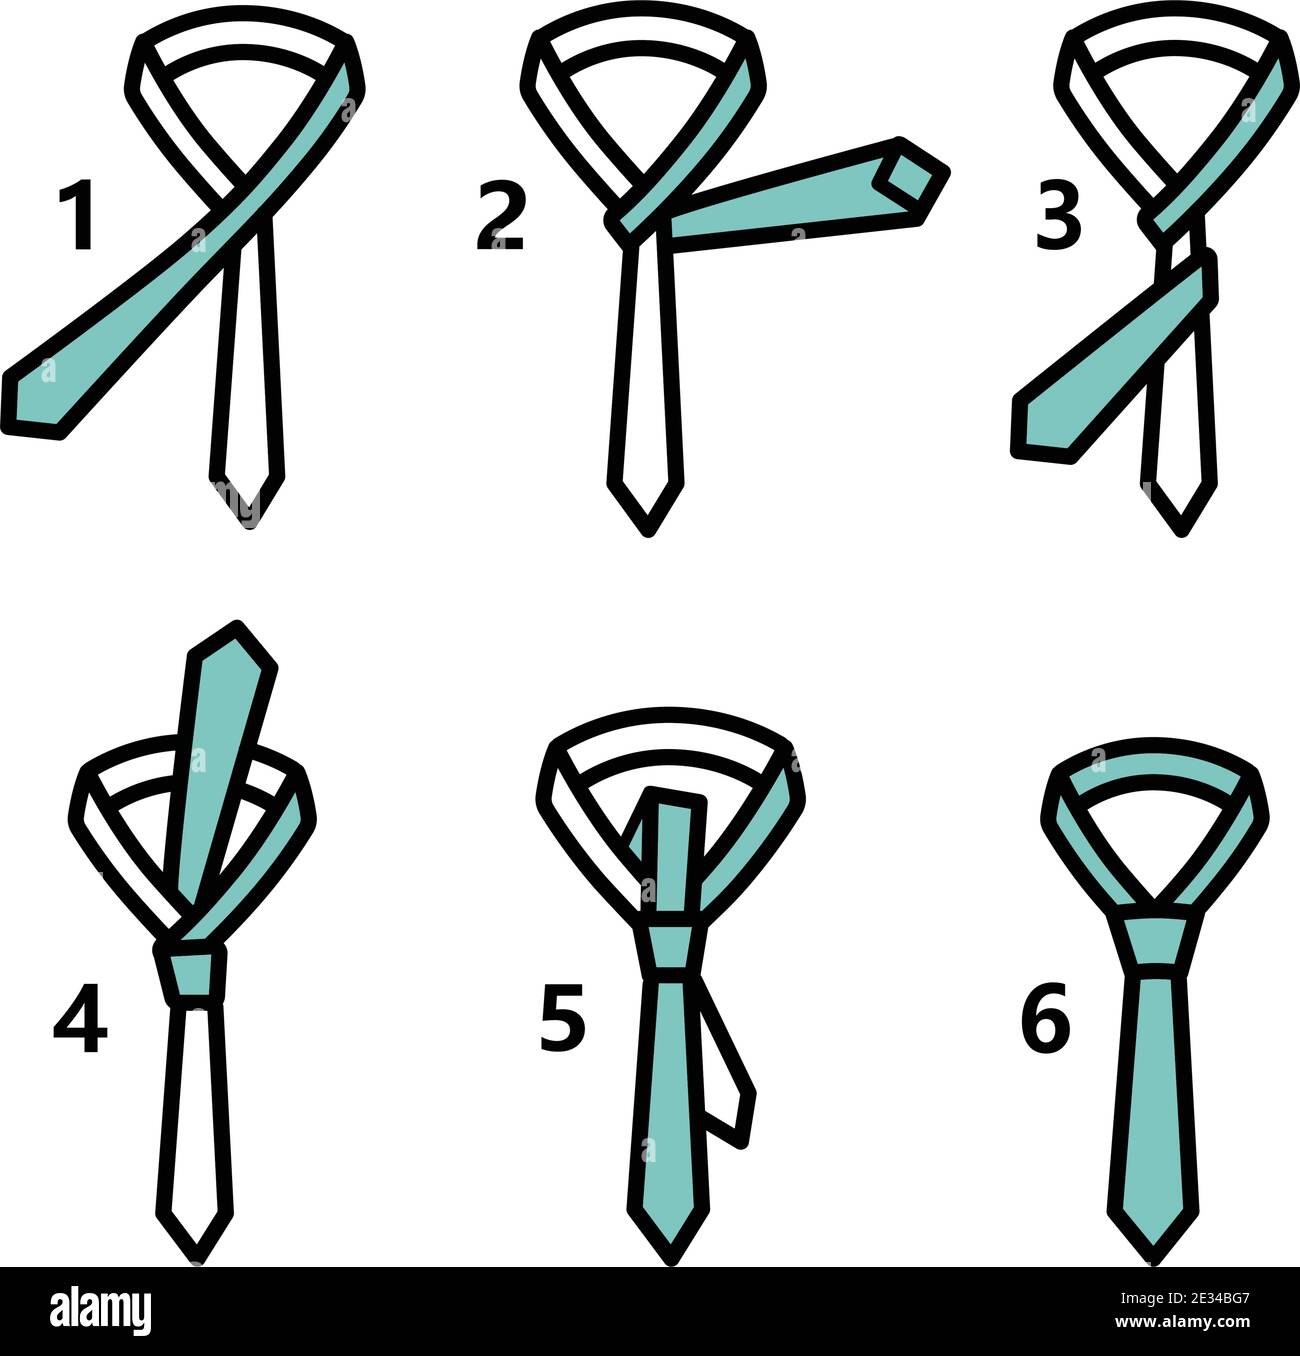 Tie - Double Simple Knot Instruction Vector color elements set